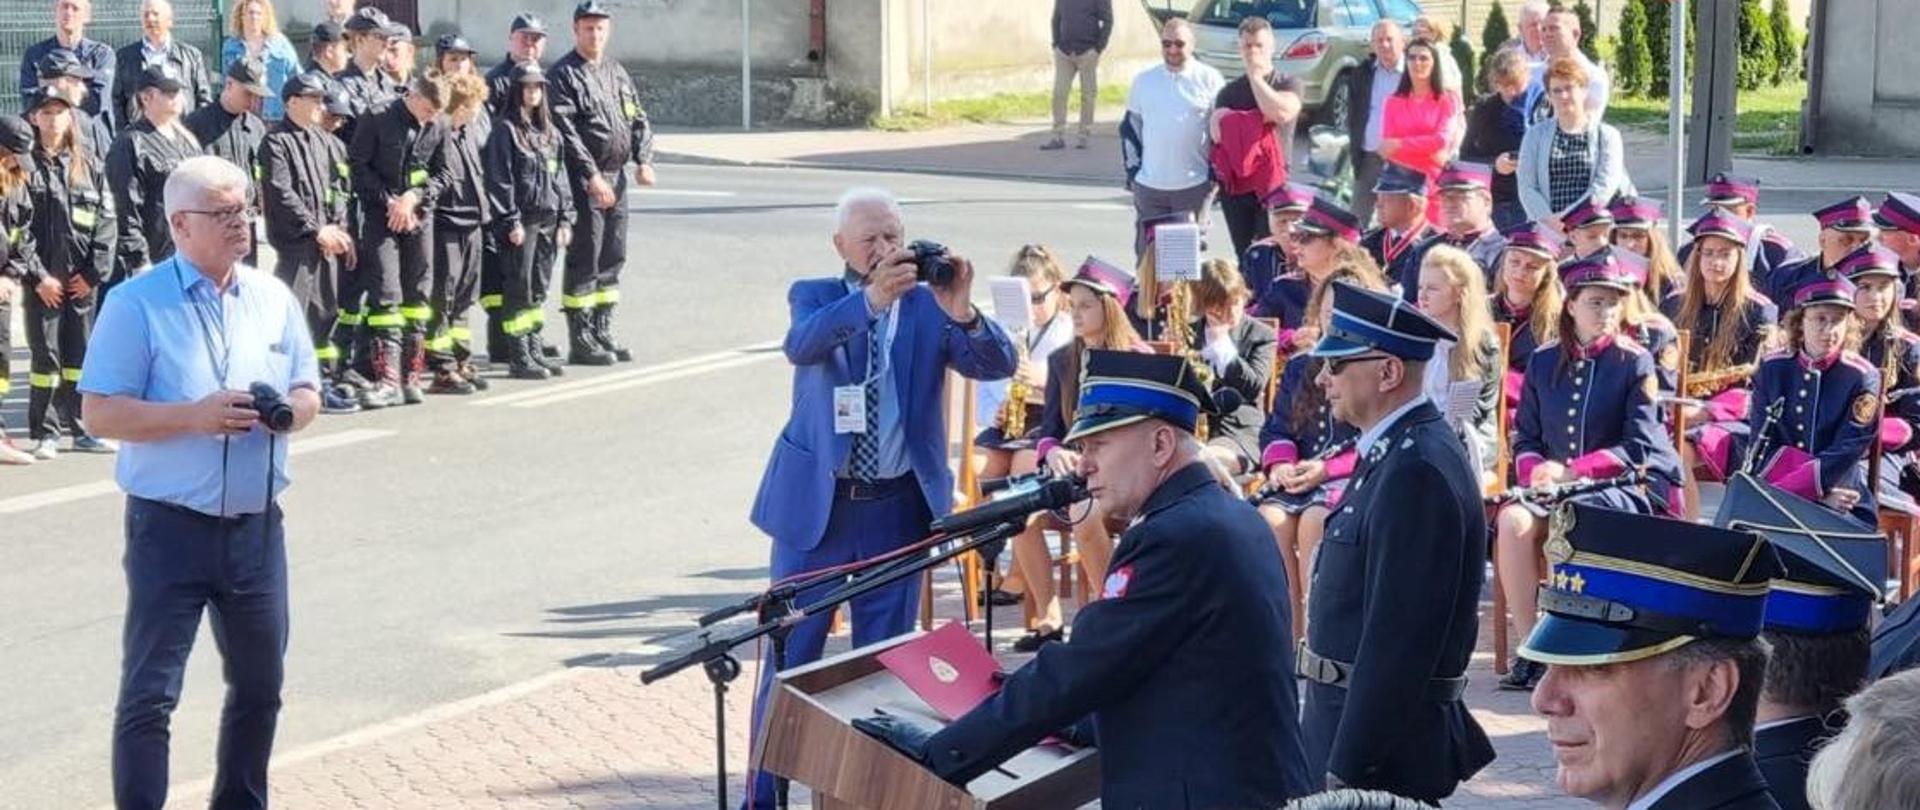 zastępca mazowieckiego komendanta wojewódzkiego psp przemawia podczas uroczystości. z boku widać orkiestrę dęta, po drugiej stronie stoją młodzi strażacy osp.